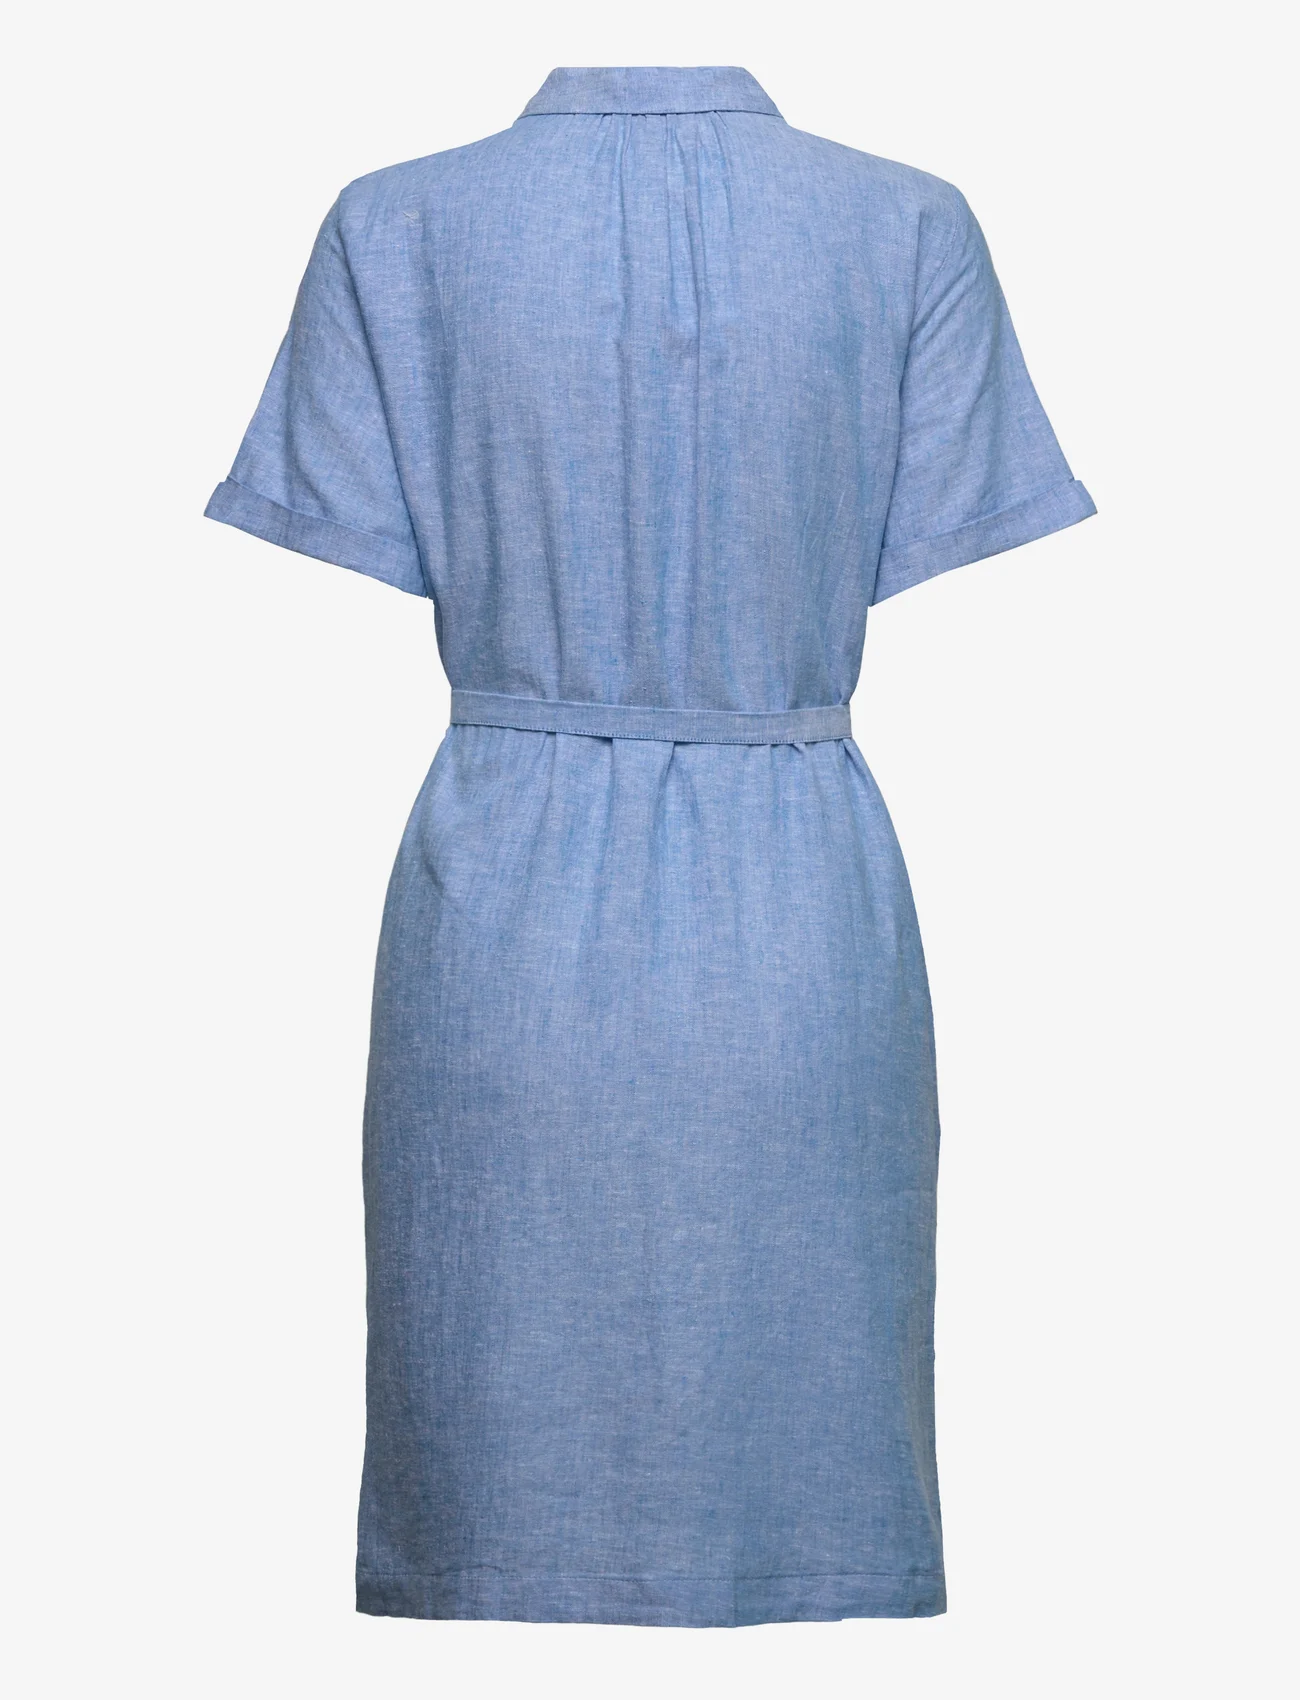 Tom Tailor - chambray linen mix dress - shirt dresses - soft cloud blue - 1